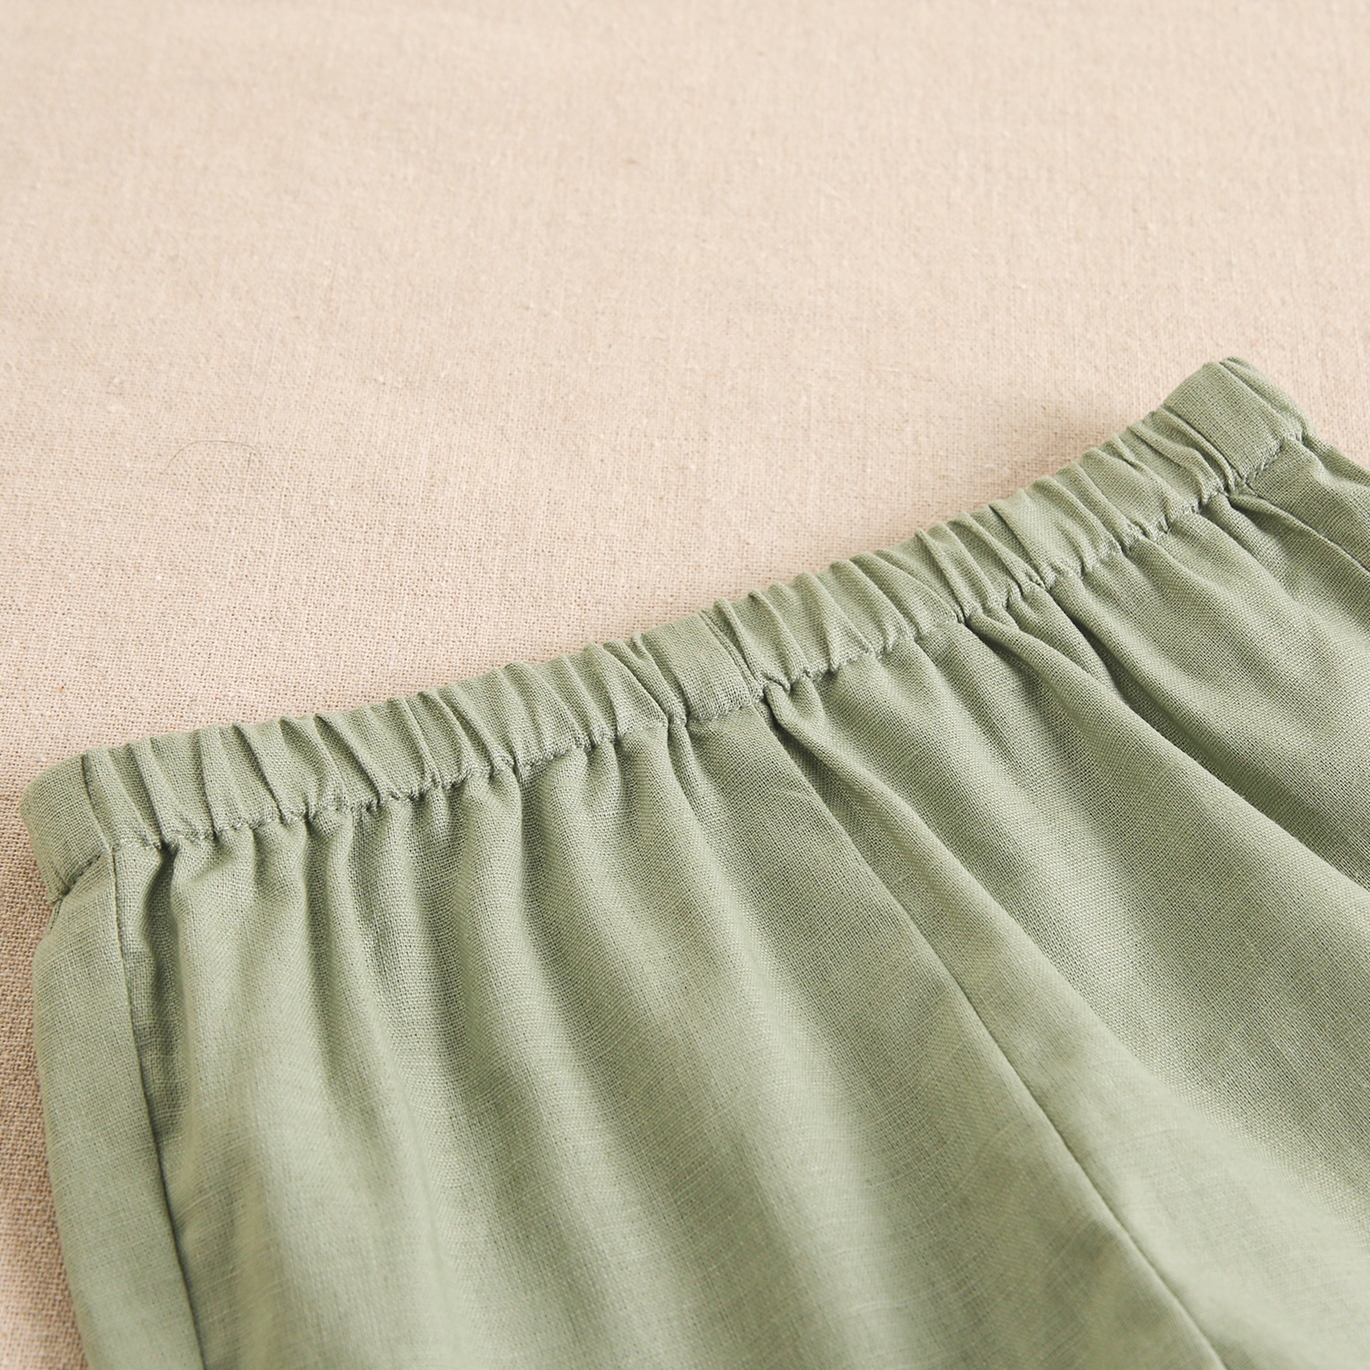 Imagen de Conjunto de bebé niño con camisa de cuadros vichy verdes y blancos y pantalón corto verde